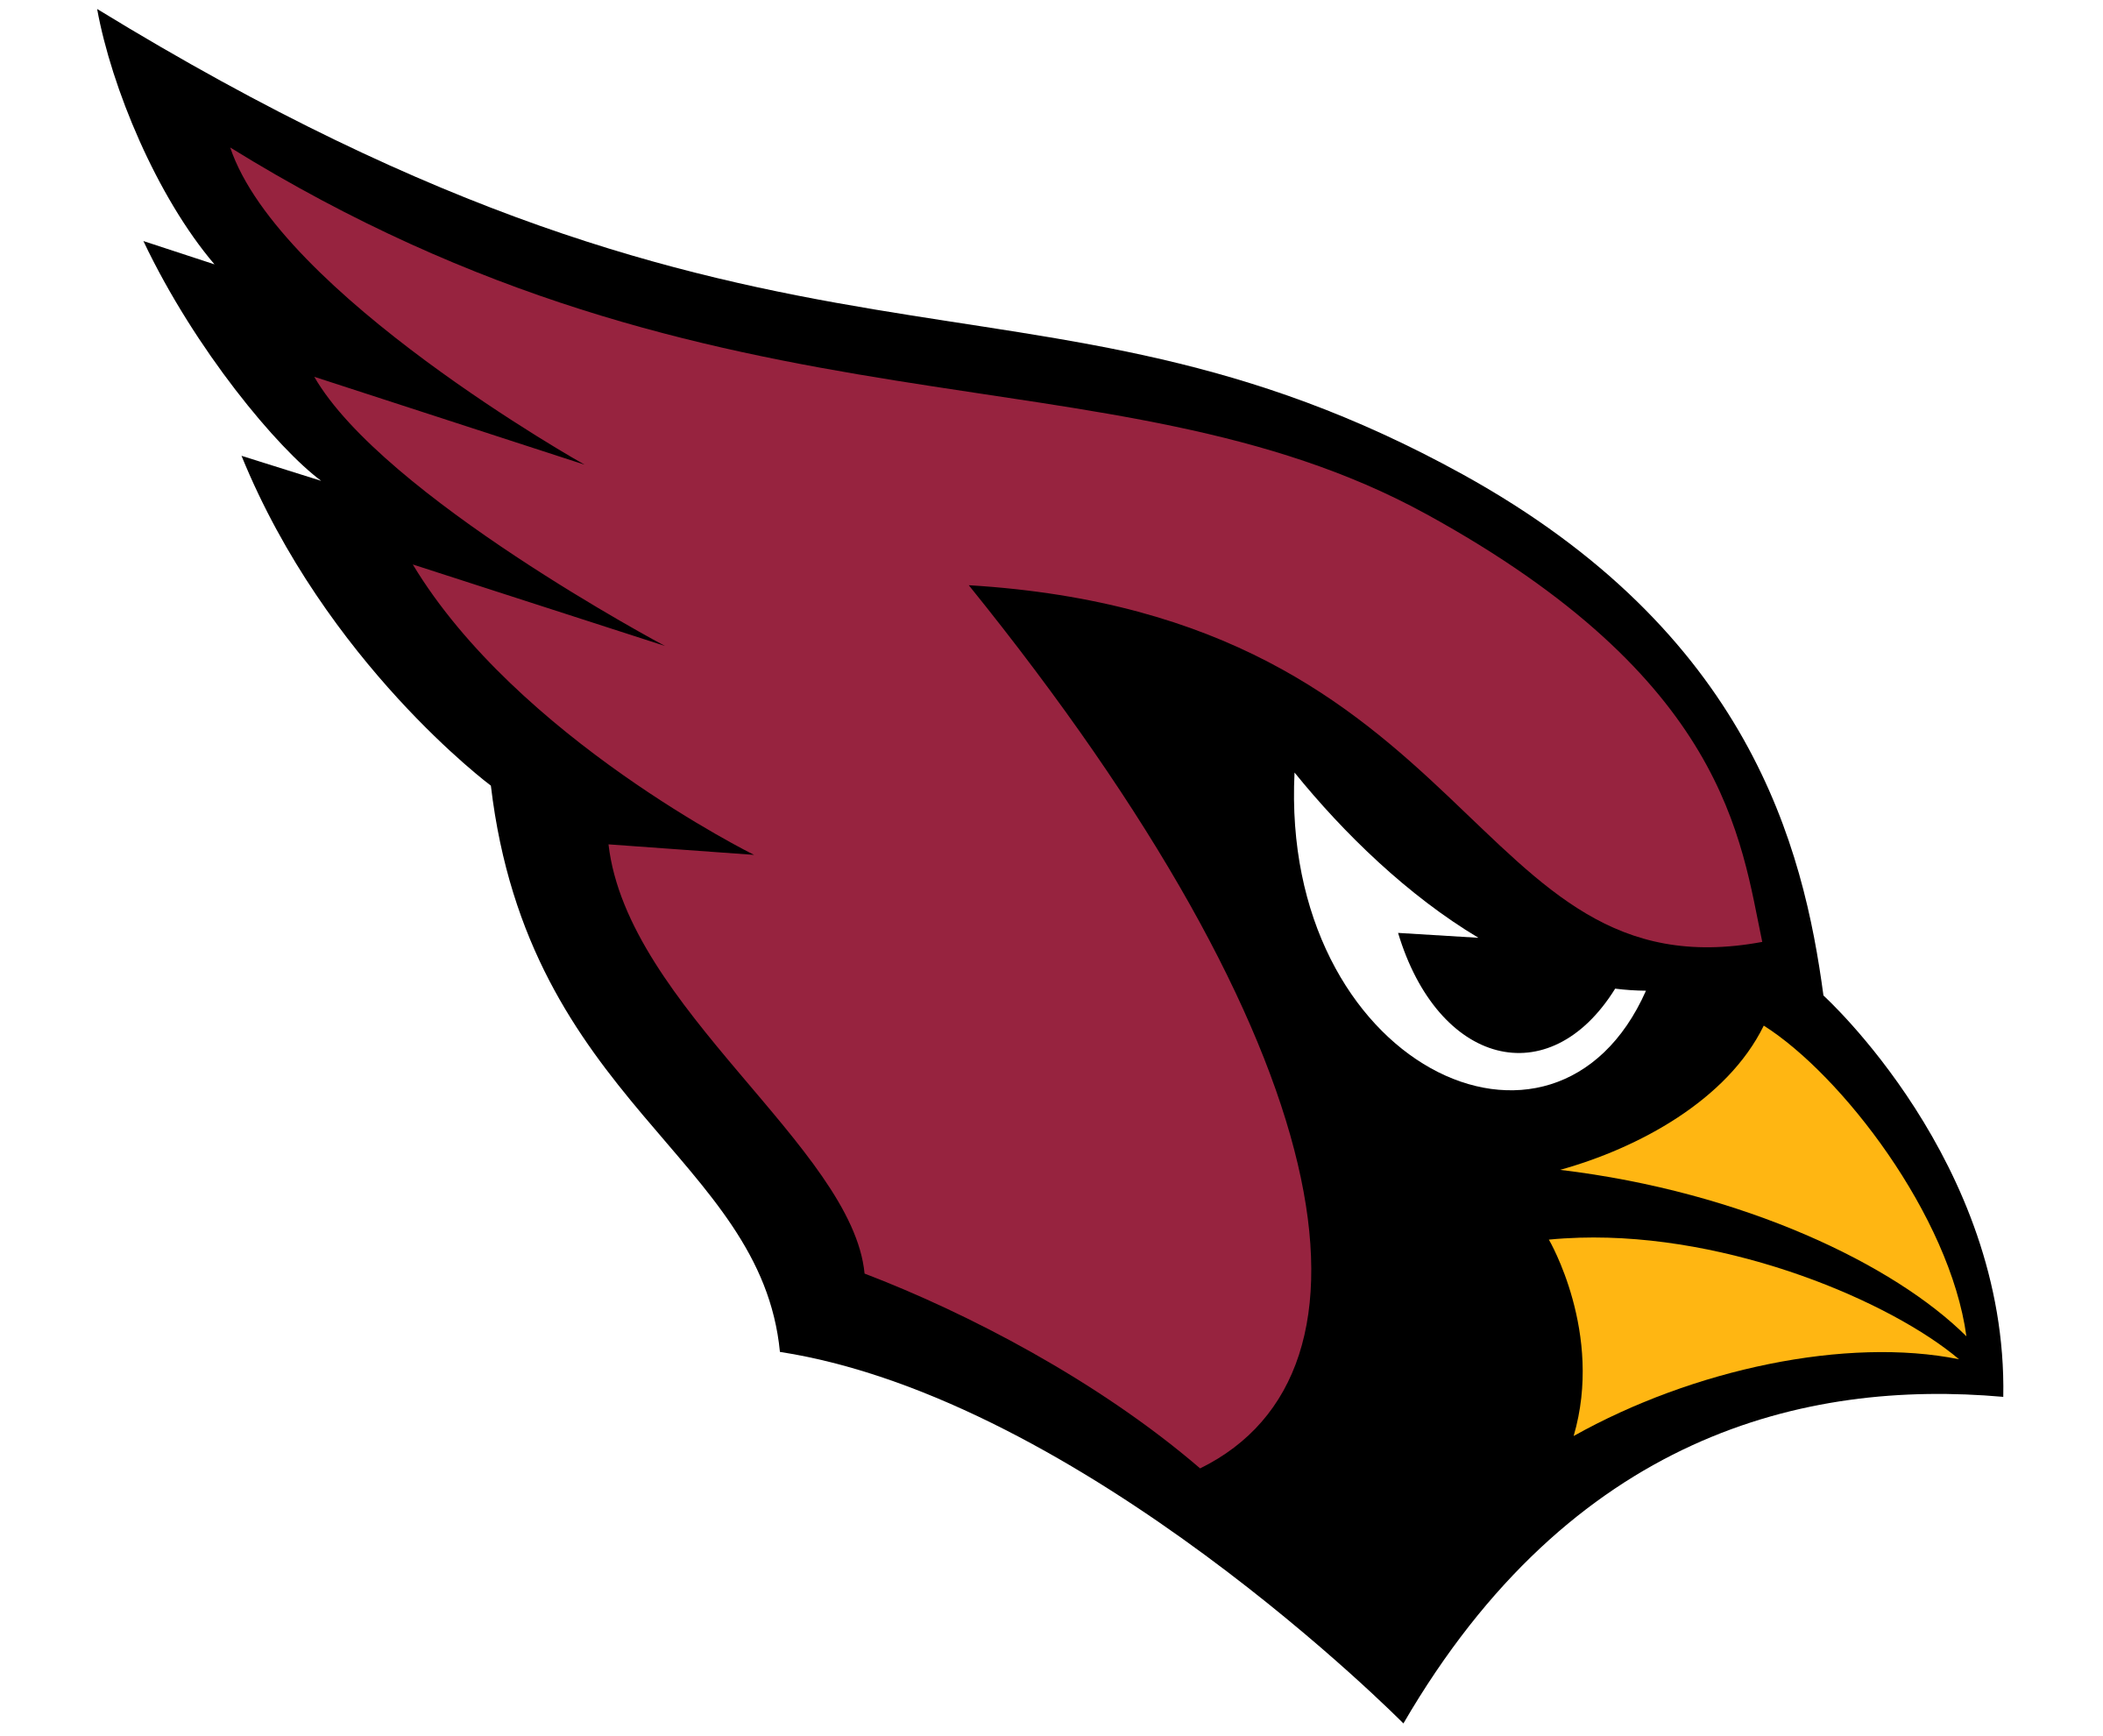 Arizona Cardinals Logo 2 (PSD